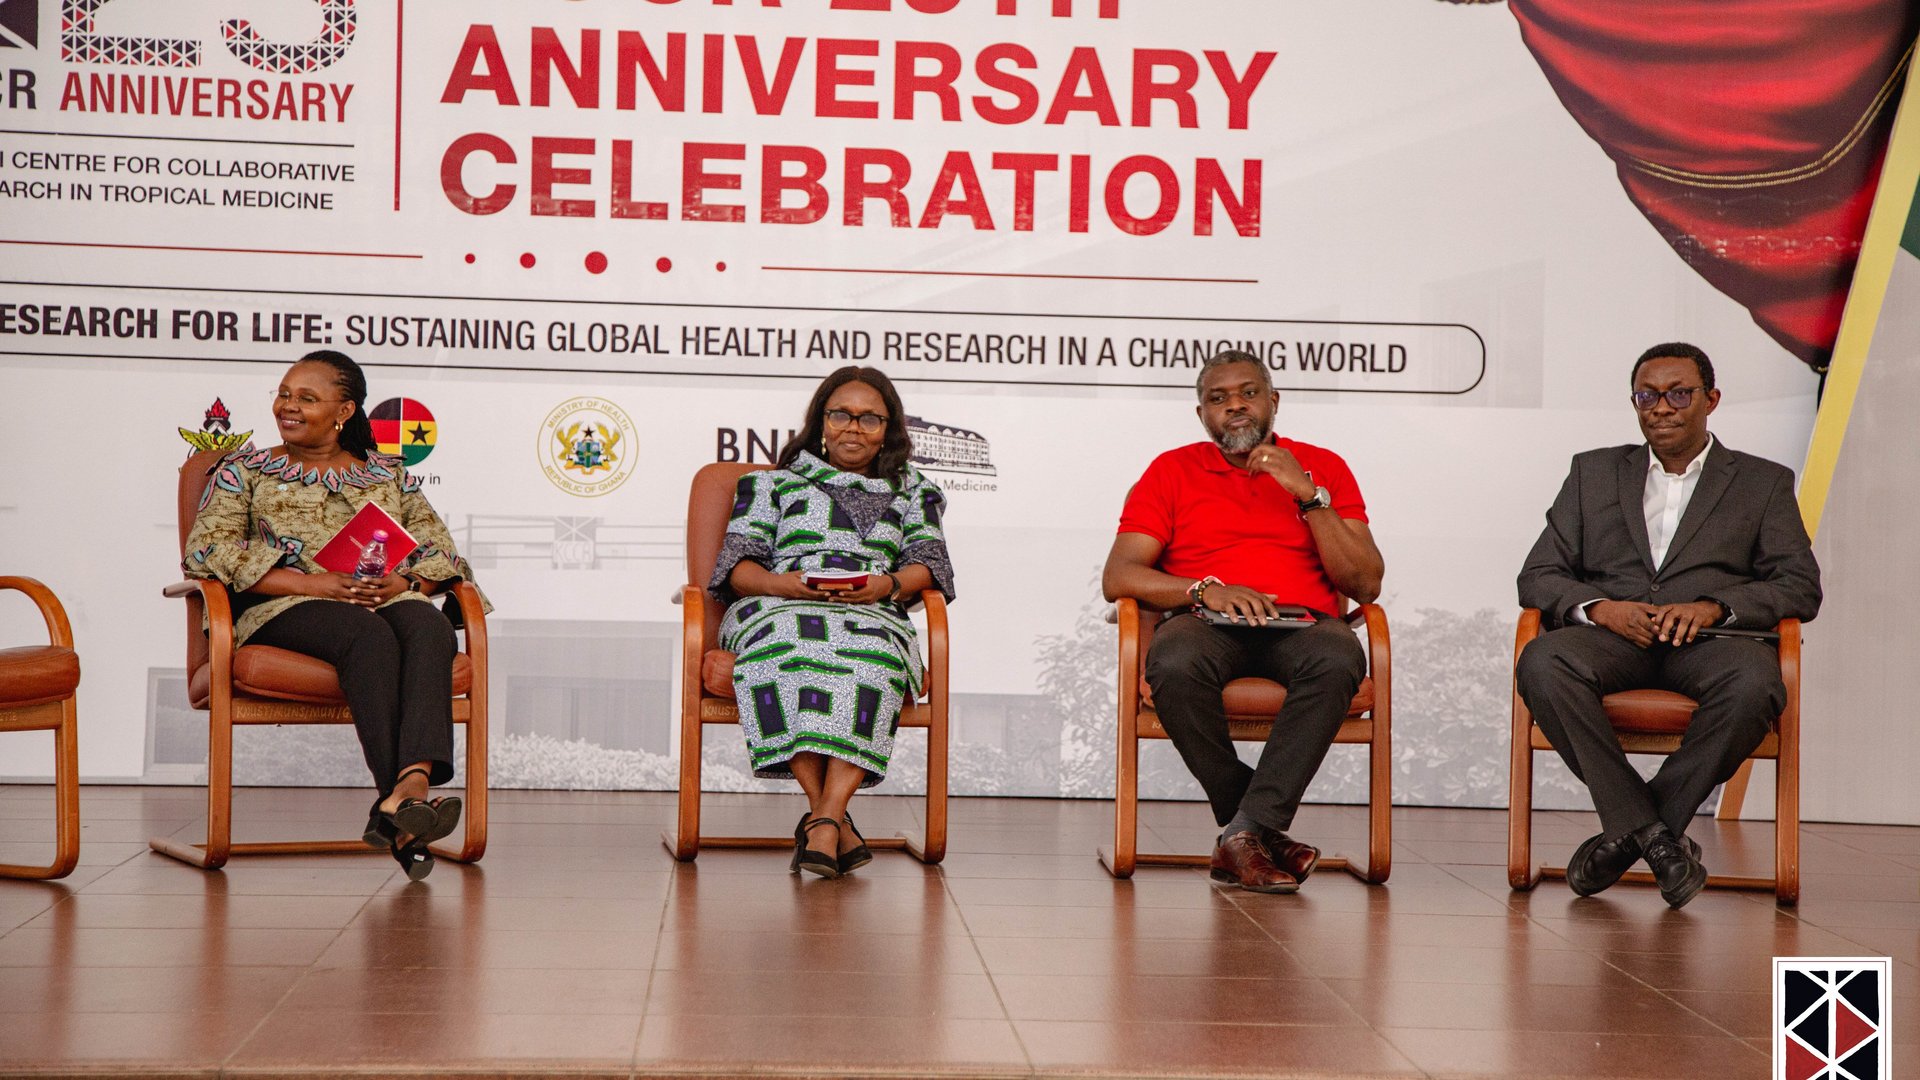 Das Foto zeigt zwei Wissenschaftlerinnen und zwei afrikanische Wissenschaftler auf der Bühne in Stühlen sitzen und diskutieren.